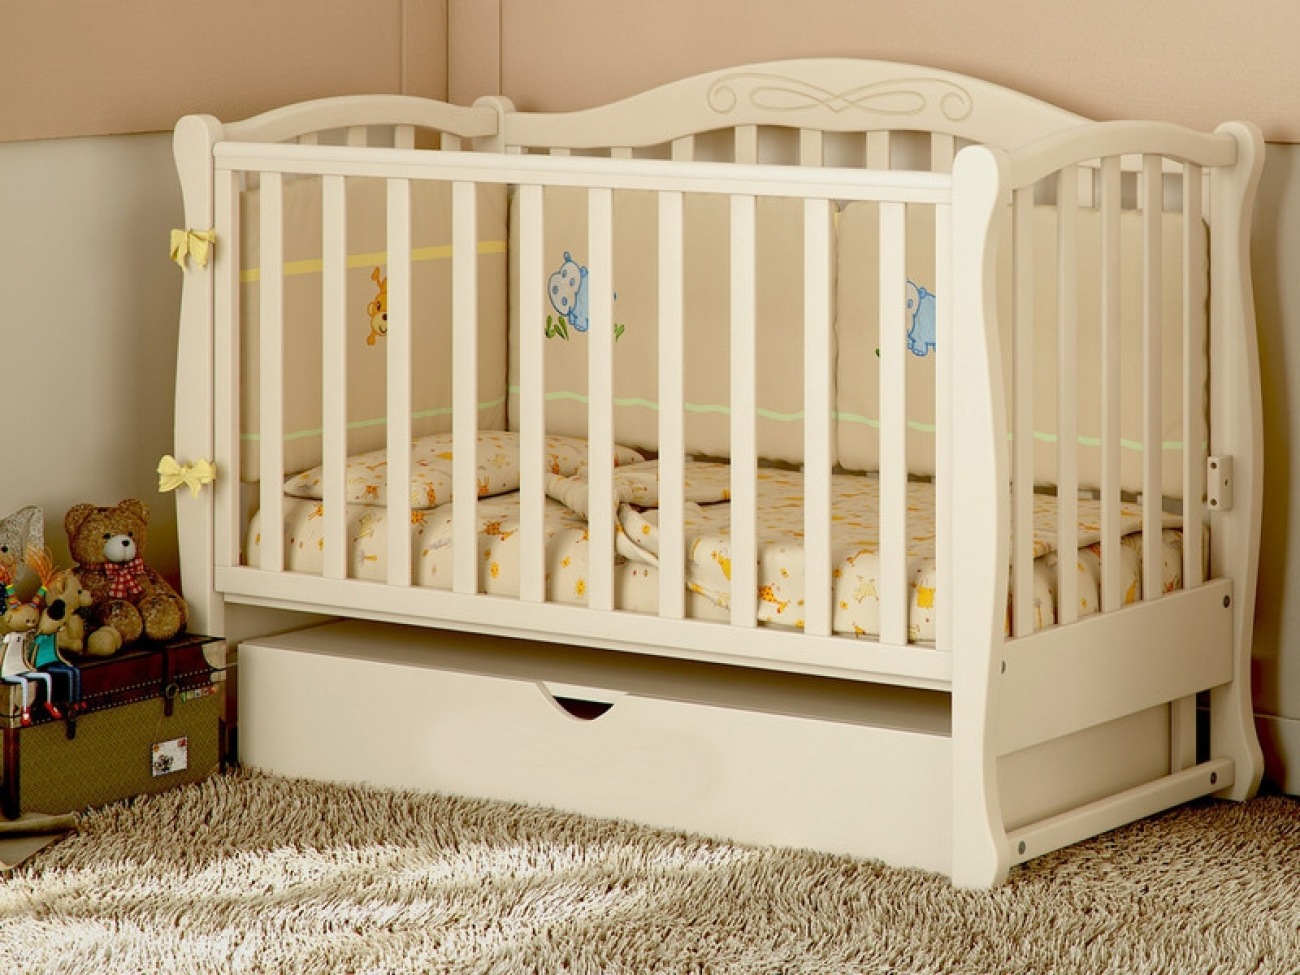 Реанимационные кровати для новорожденных